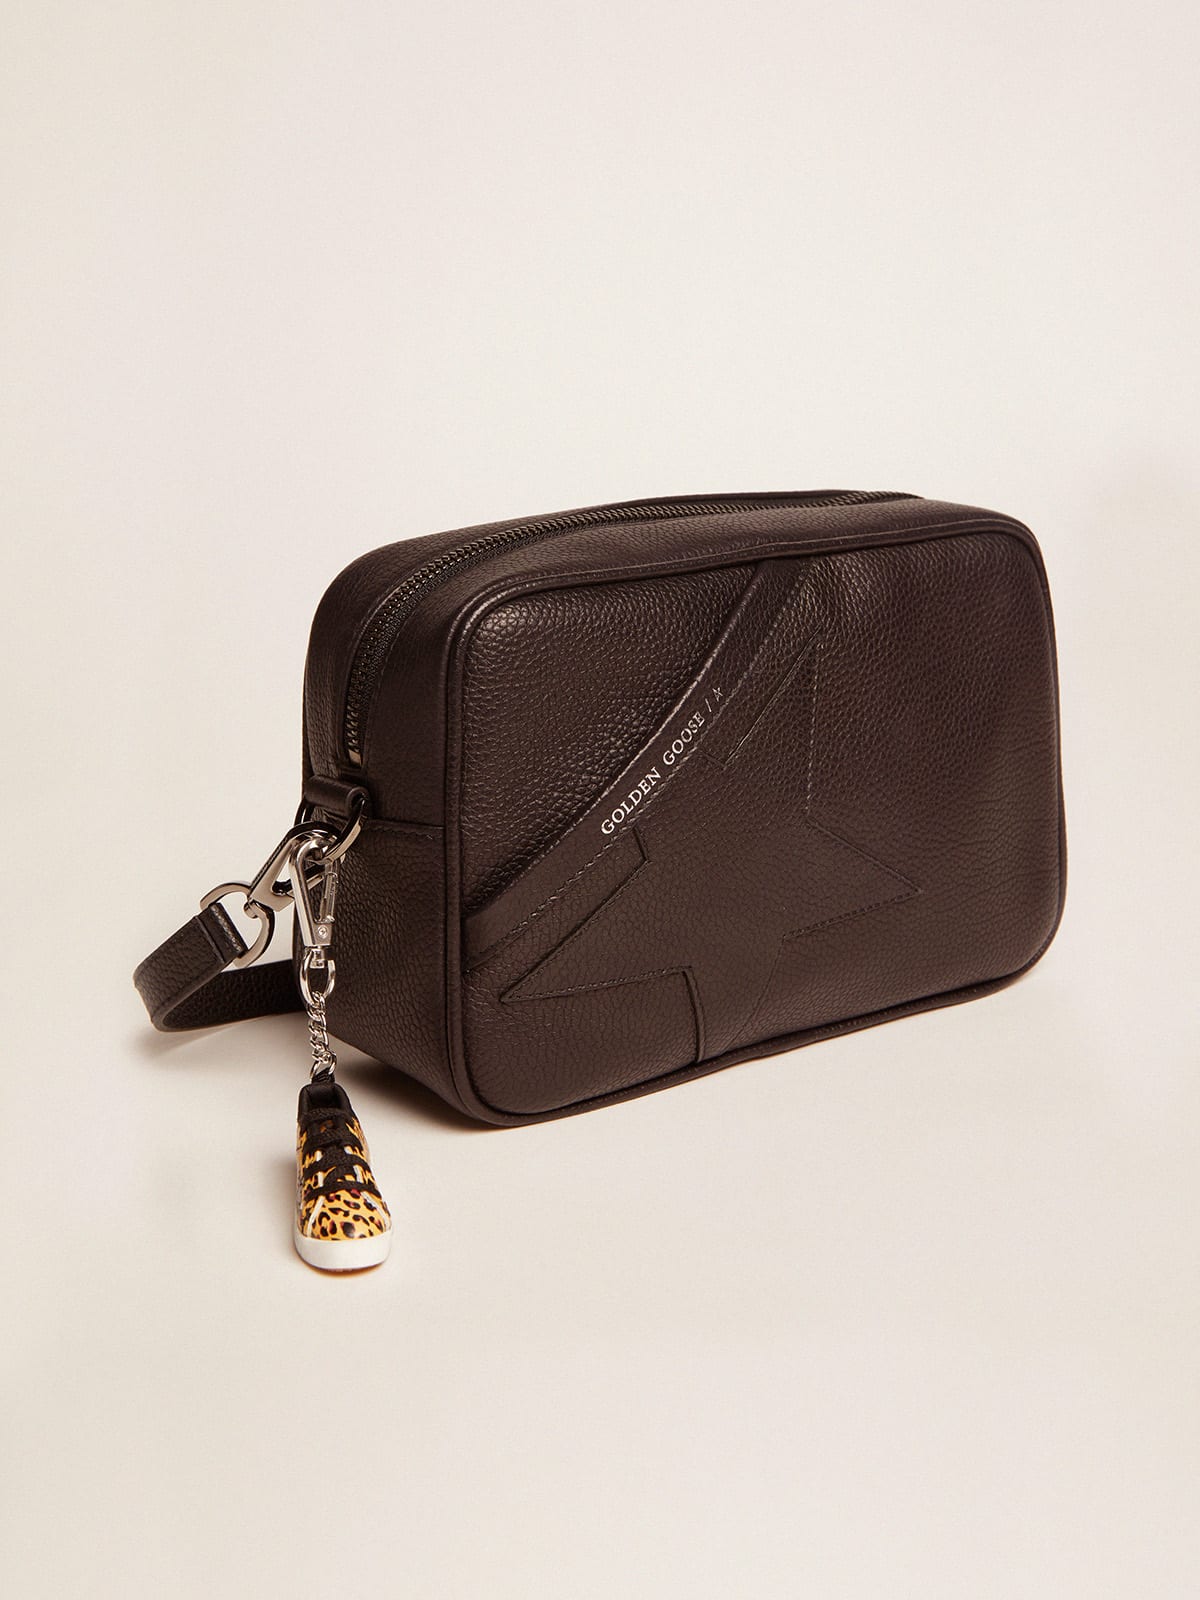 Golden Goose - Black Star Bag made of hammered leather in 